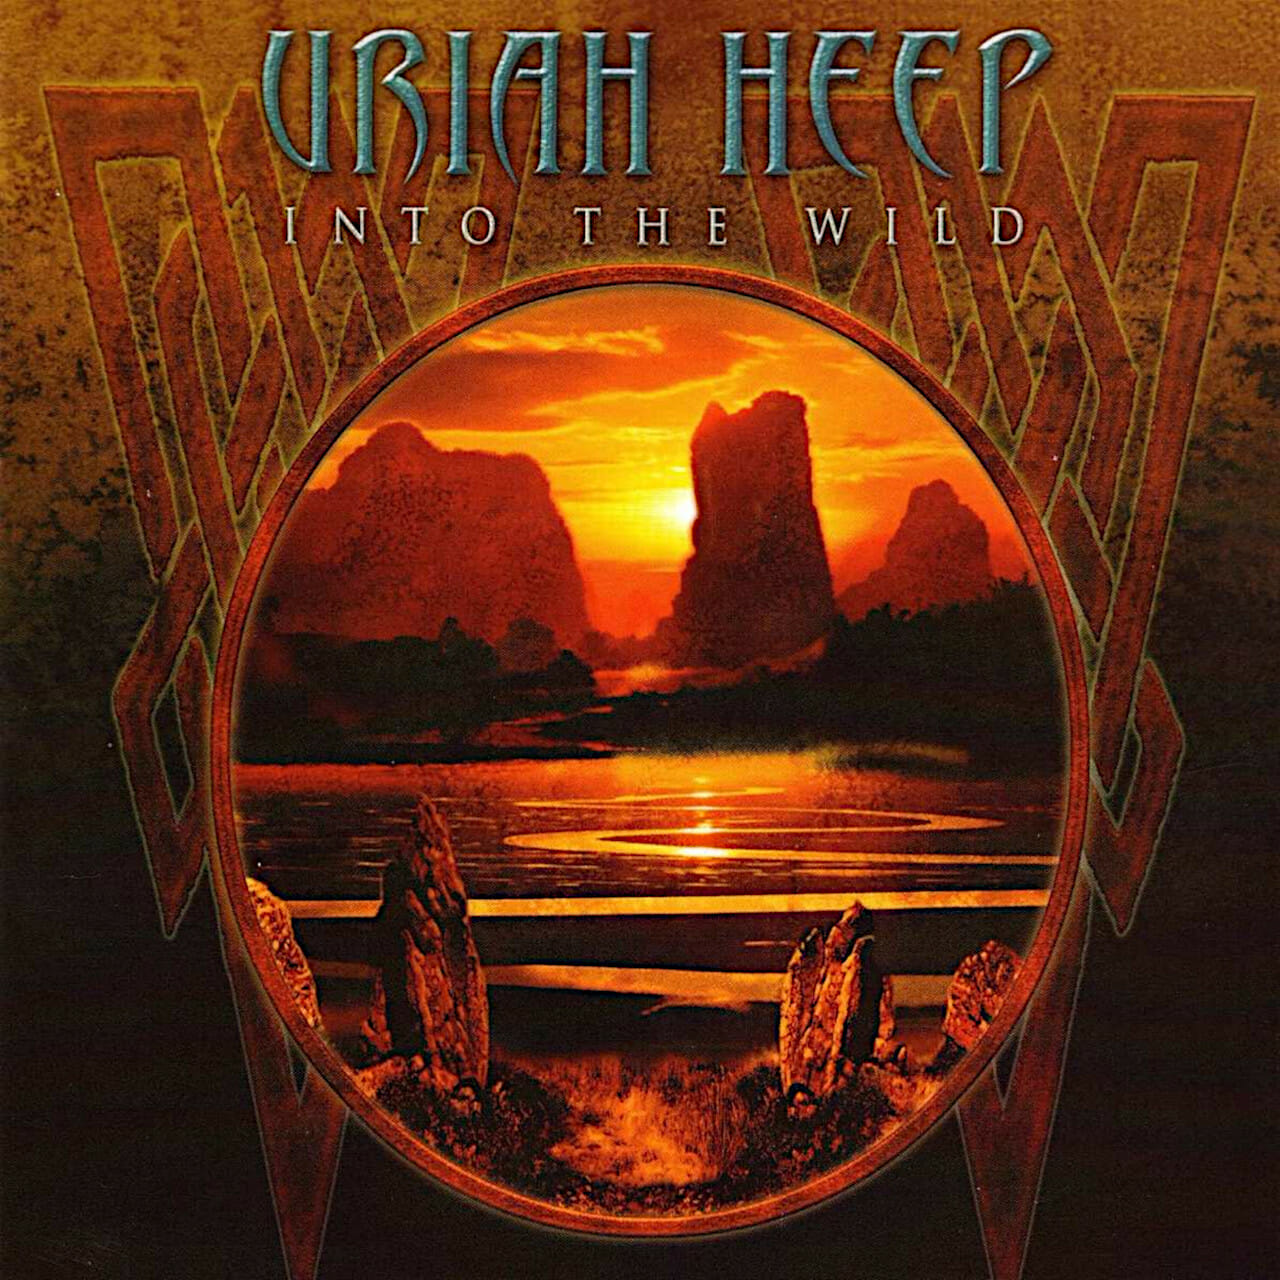 Uriah Heep Into The Wild (Uriah Heep Into The Wild)